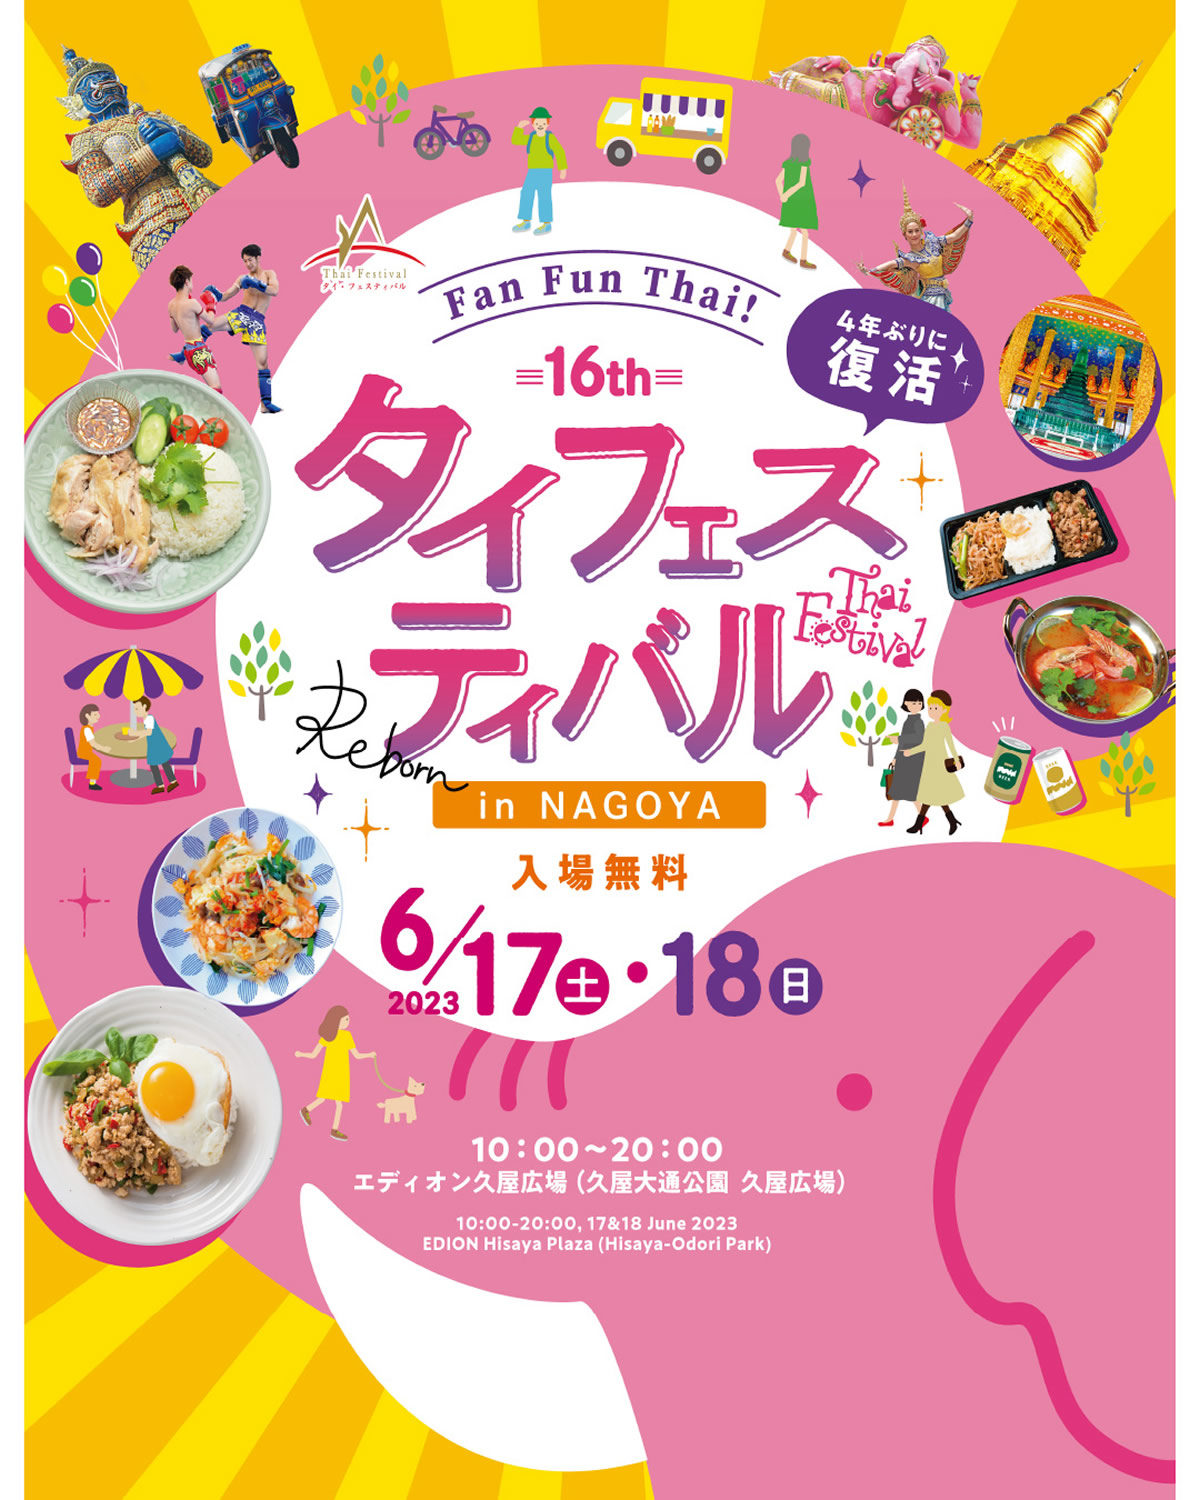 「タイフェスティバル in 名古屋 2023」が6/17(土)・18(日)開催